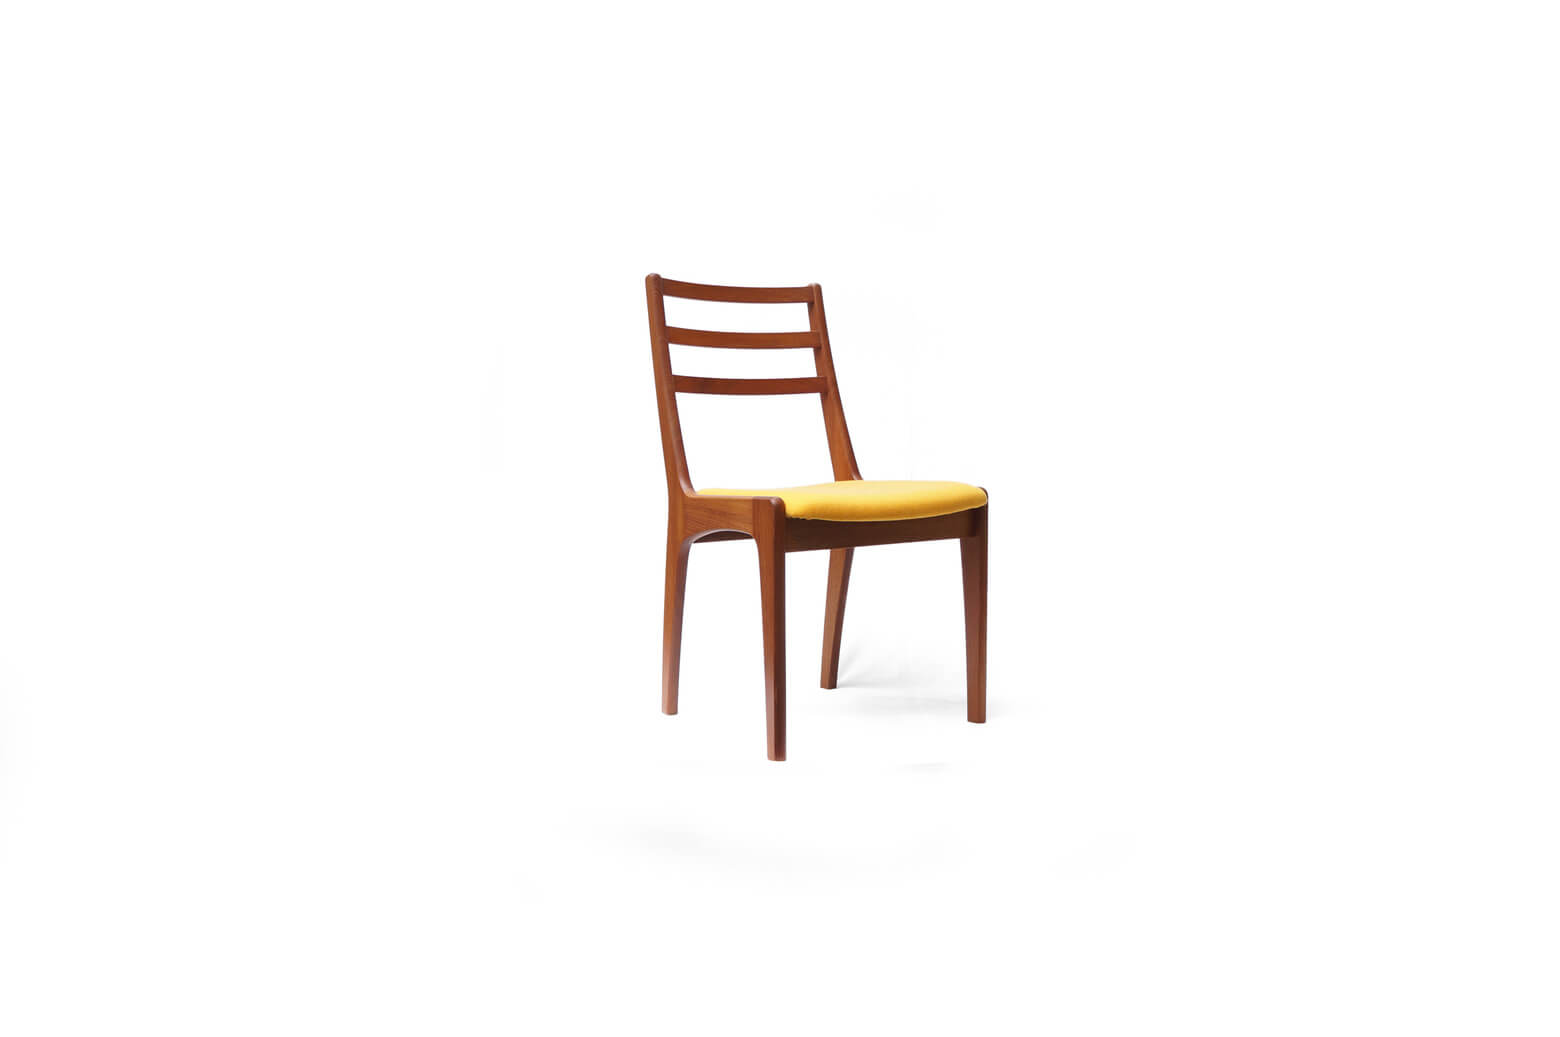 ヴィンテージ モダンデザイン チーク材 ダイニングチェア 北欧デザイン/Vintage Modern Design Teakwood Dining Chair